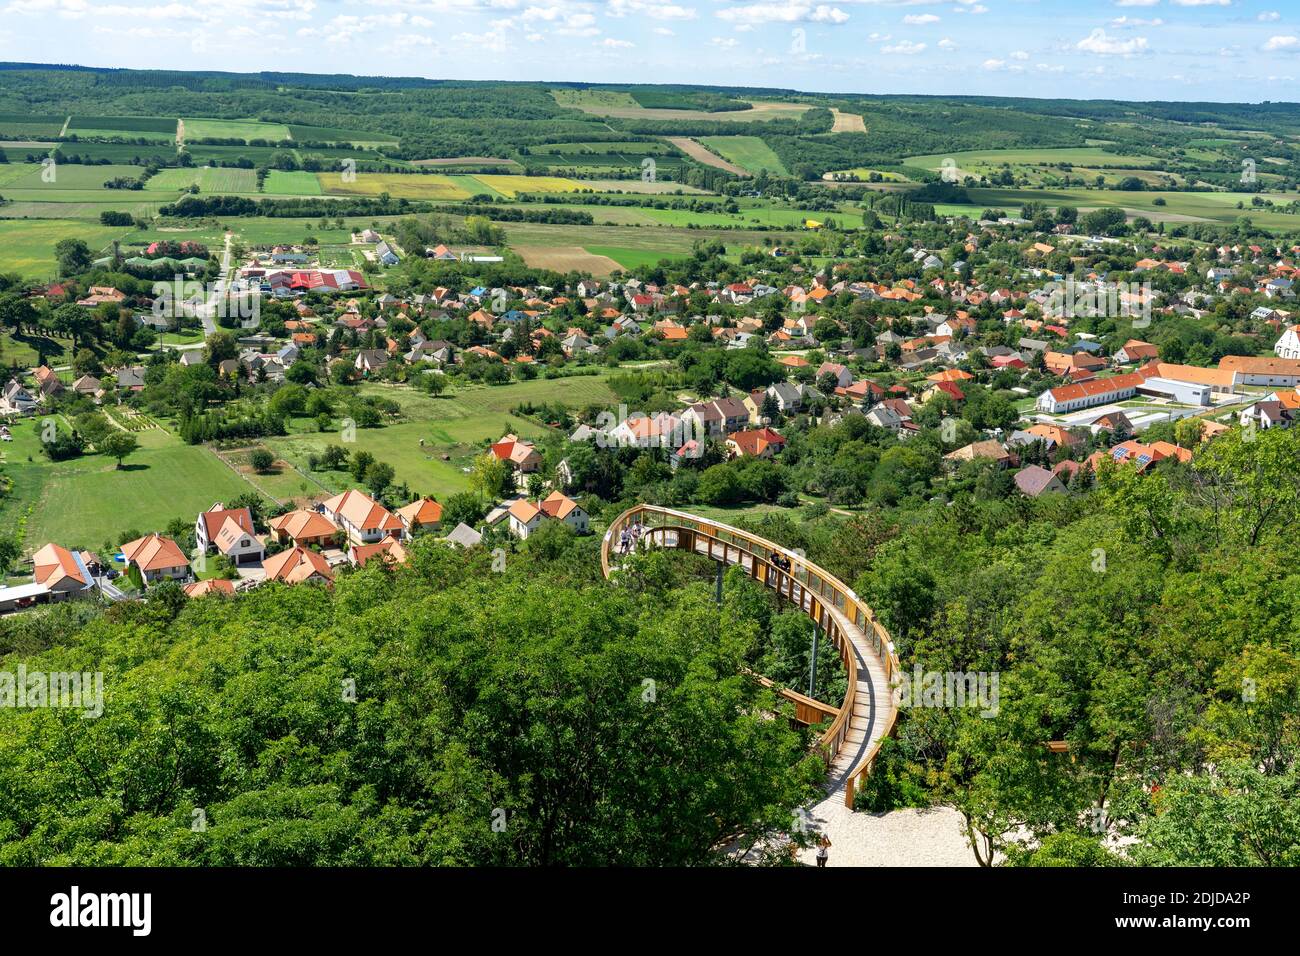 09.11.2020 - Pannonhalma, Ungarn: Abenteuer über den Wald und die Stadt Holzbaumkronenweg Weg über Pannonhalma Stockfoto